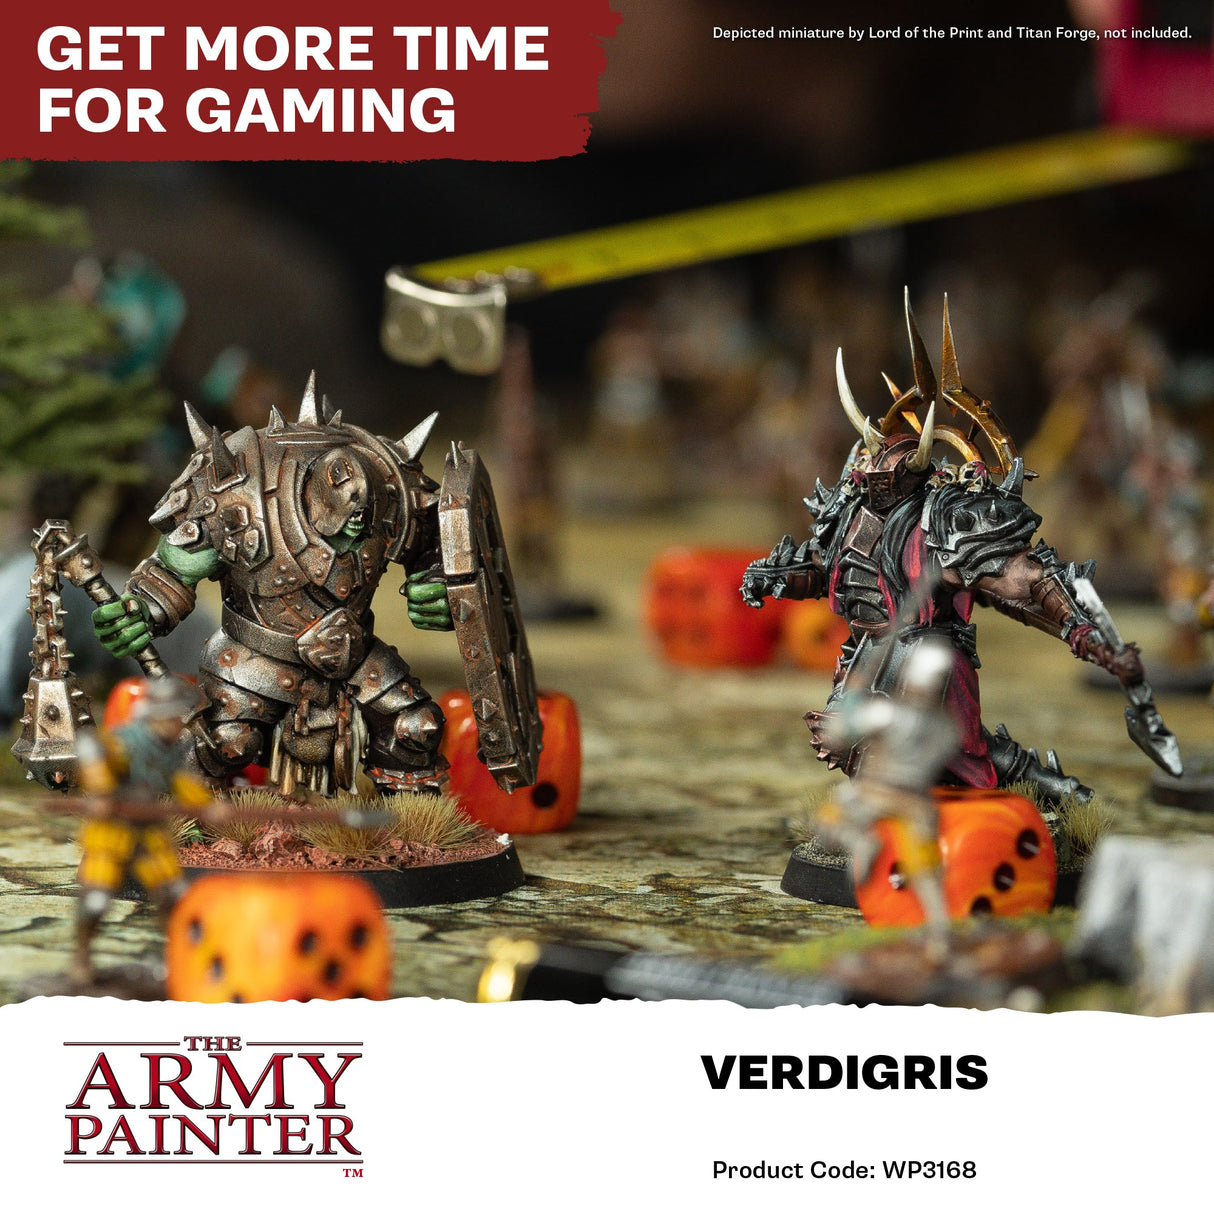 The Army Painter - Warpaints Fanatic Effects: Verdigris